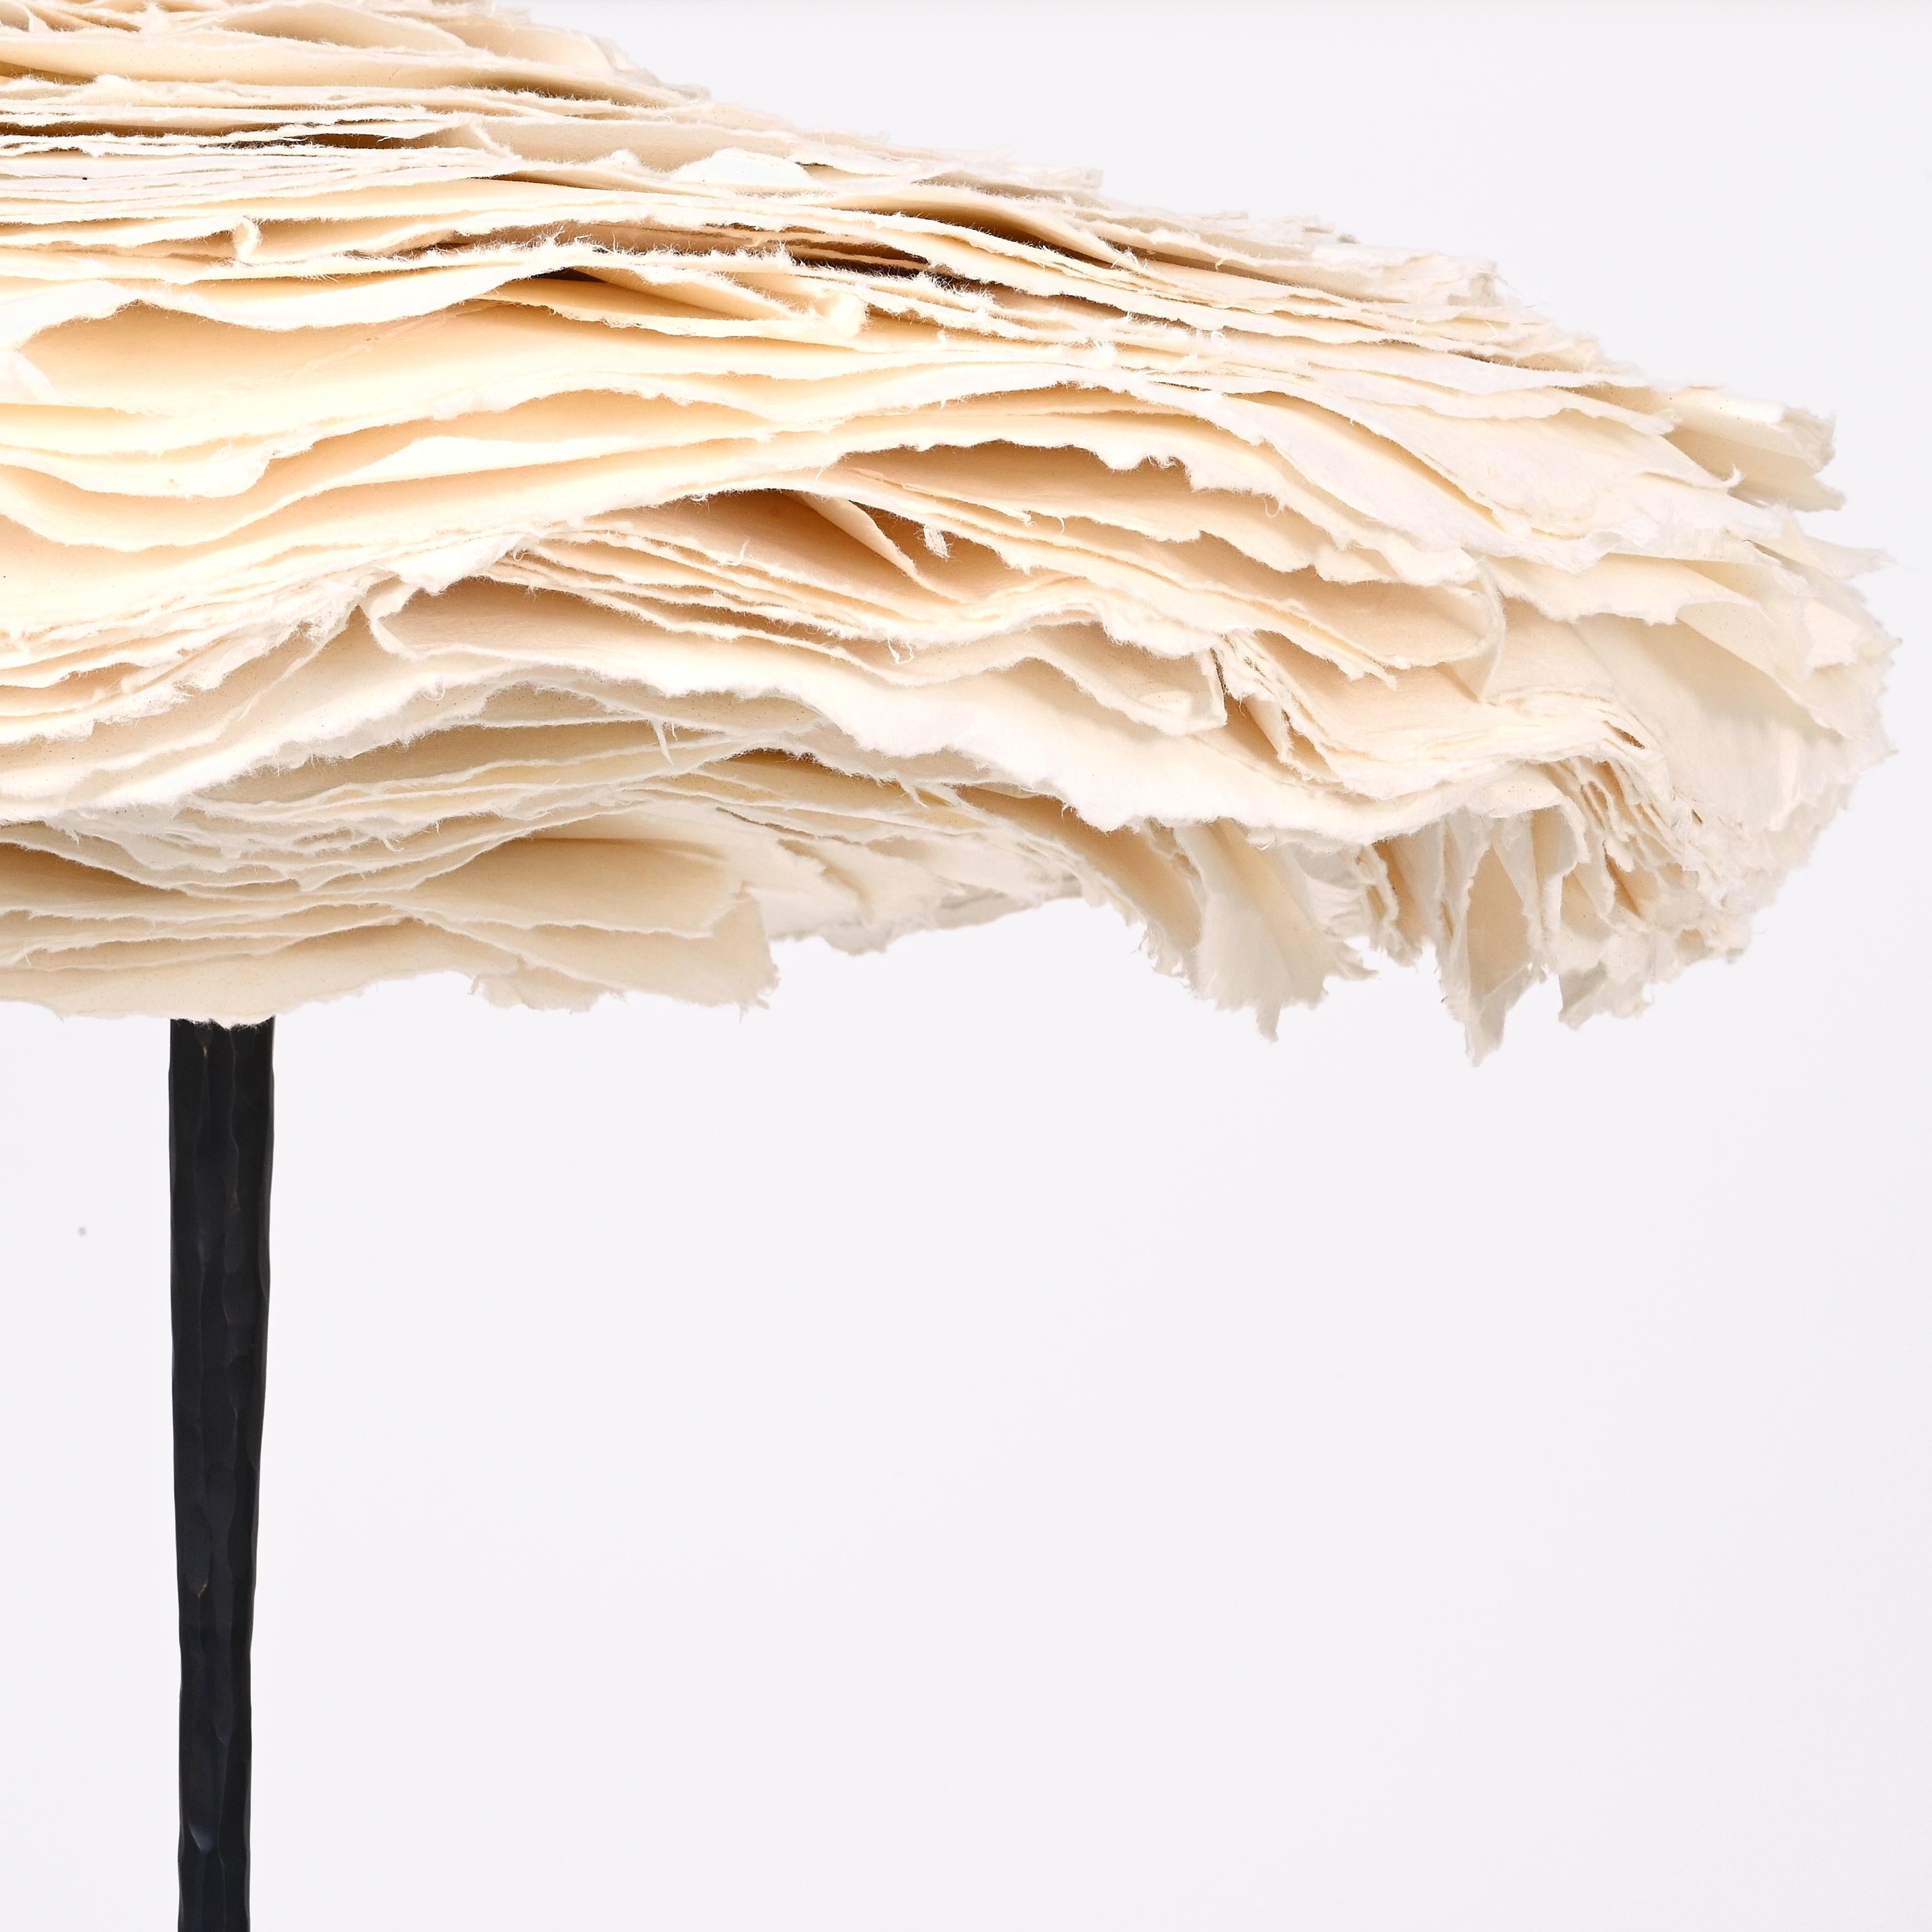 Le lampadaire Cornette, une création collaborative de Maria Group et de Design/One, est un chef-d'œuvre unique qui met en évidence la convergence de l'art et de l'innovation en matière de design. Ce lampadaire exceptionnel doit son caractère